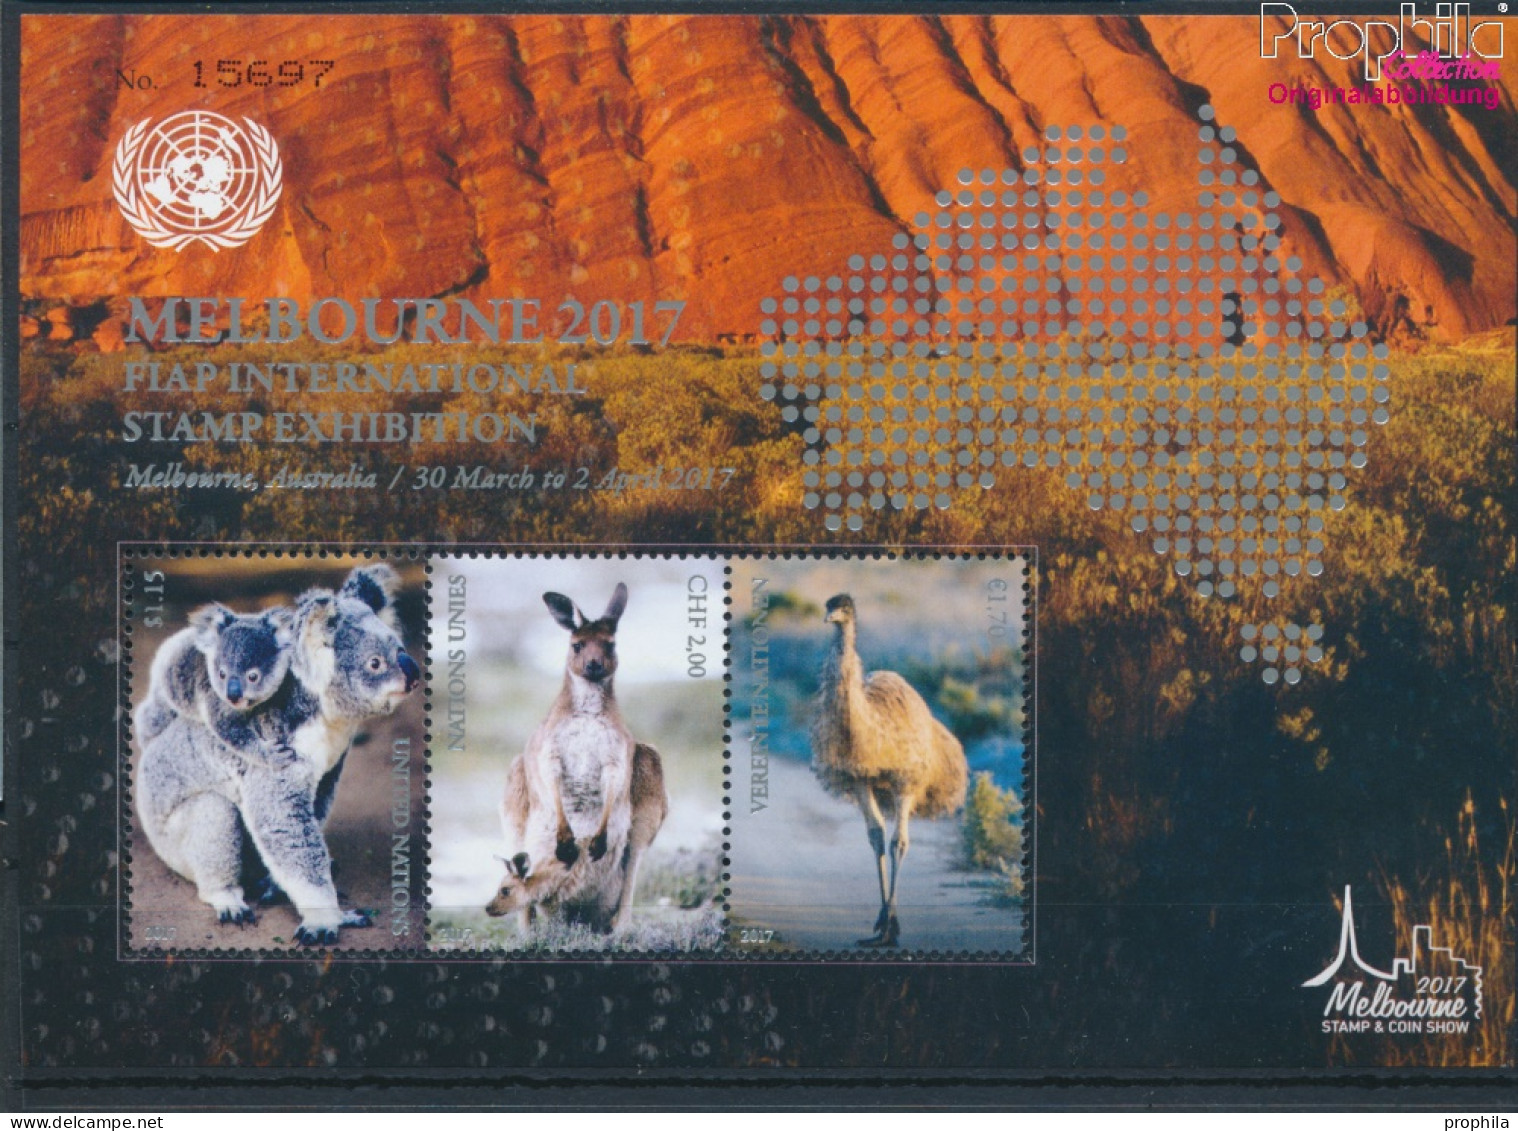 UNO - Genf Block46 (kompl.Ausg.) Postfrisch 2017 Asiatische Briefmarkenausstellung (10194061 - Neufs